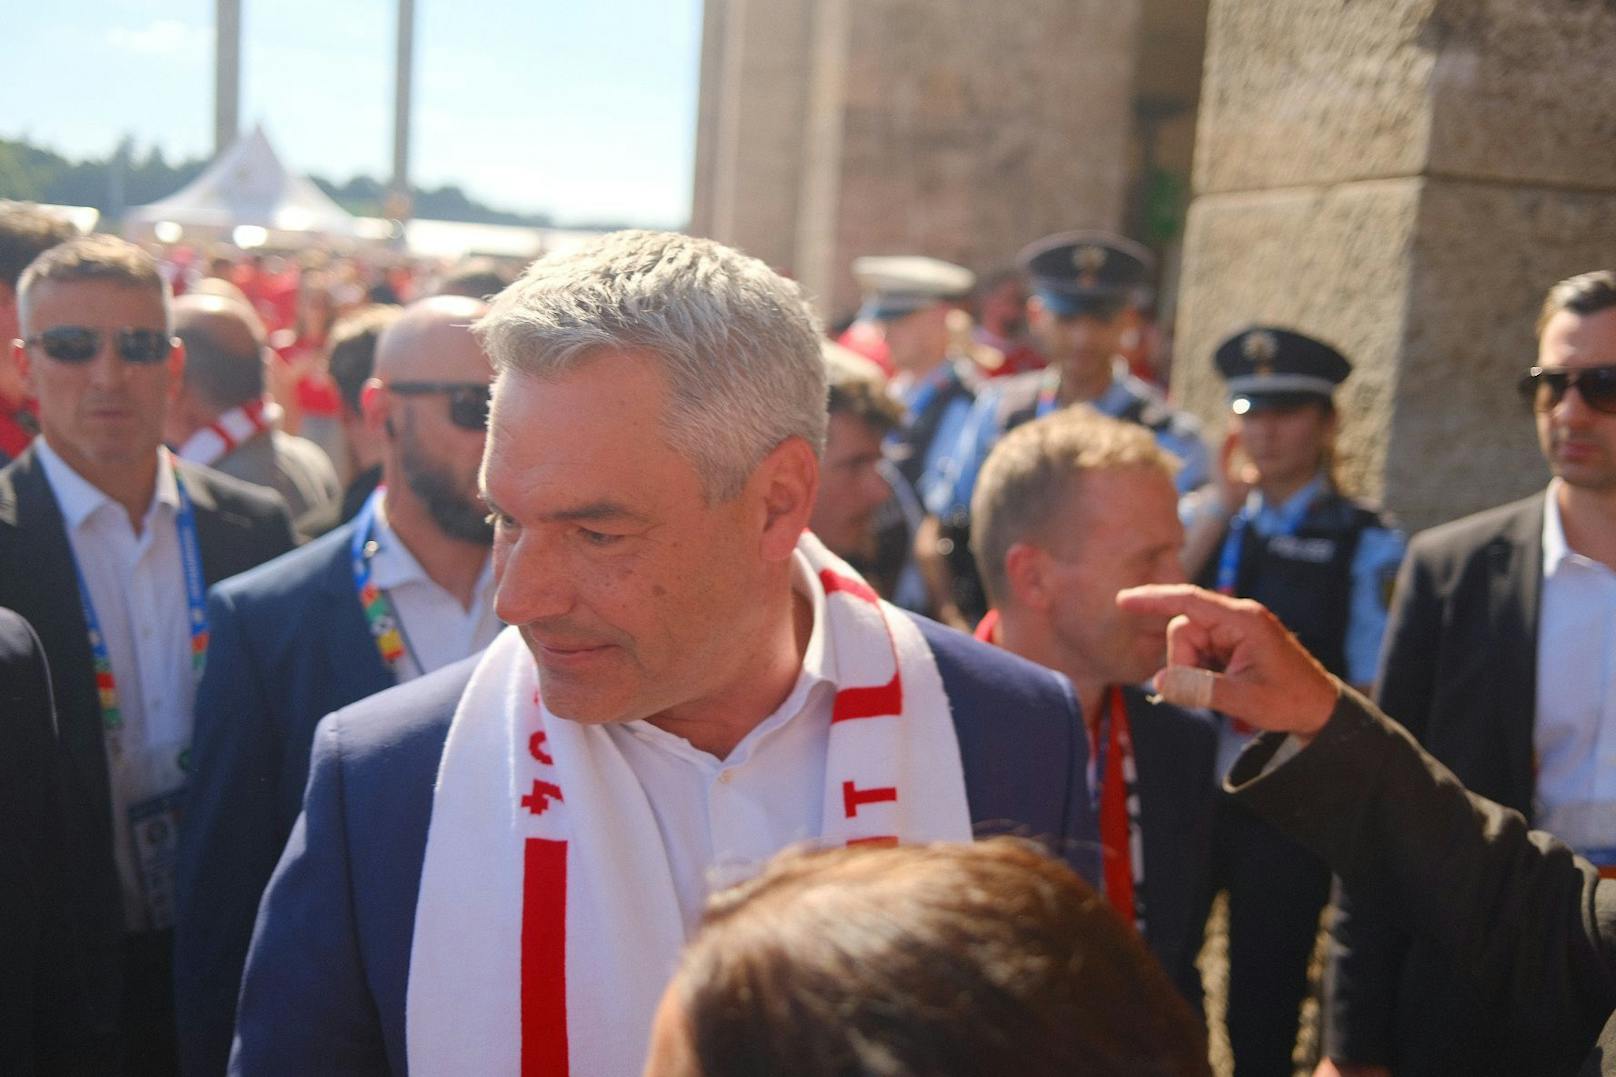 Bundeskanzler Karl Nehammer (ÖVP) mit Fan-Schal vor dem Olympiastadion.